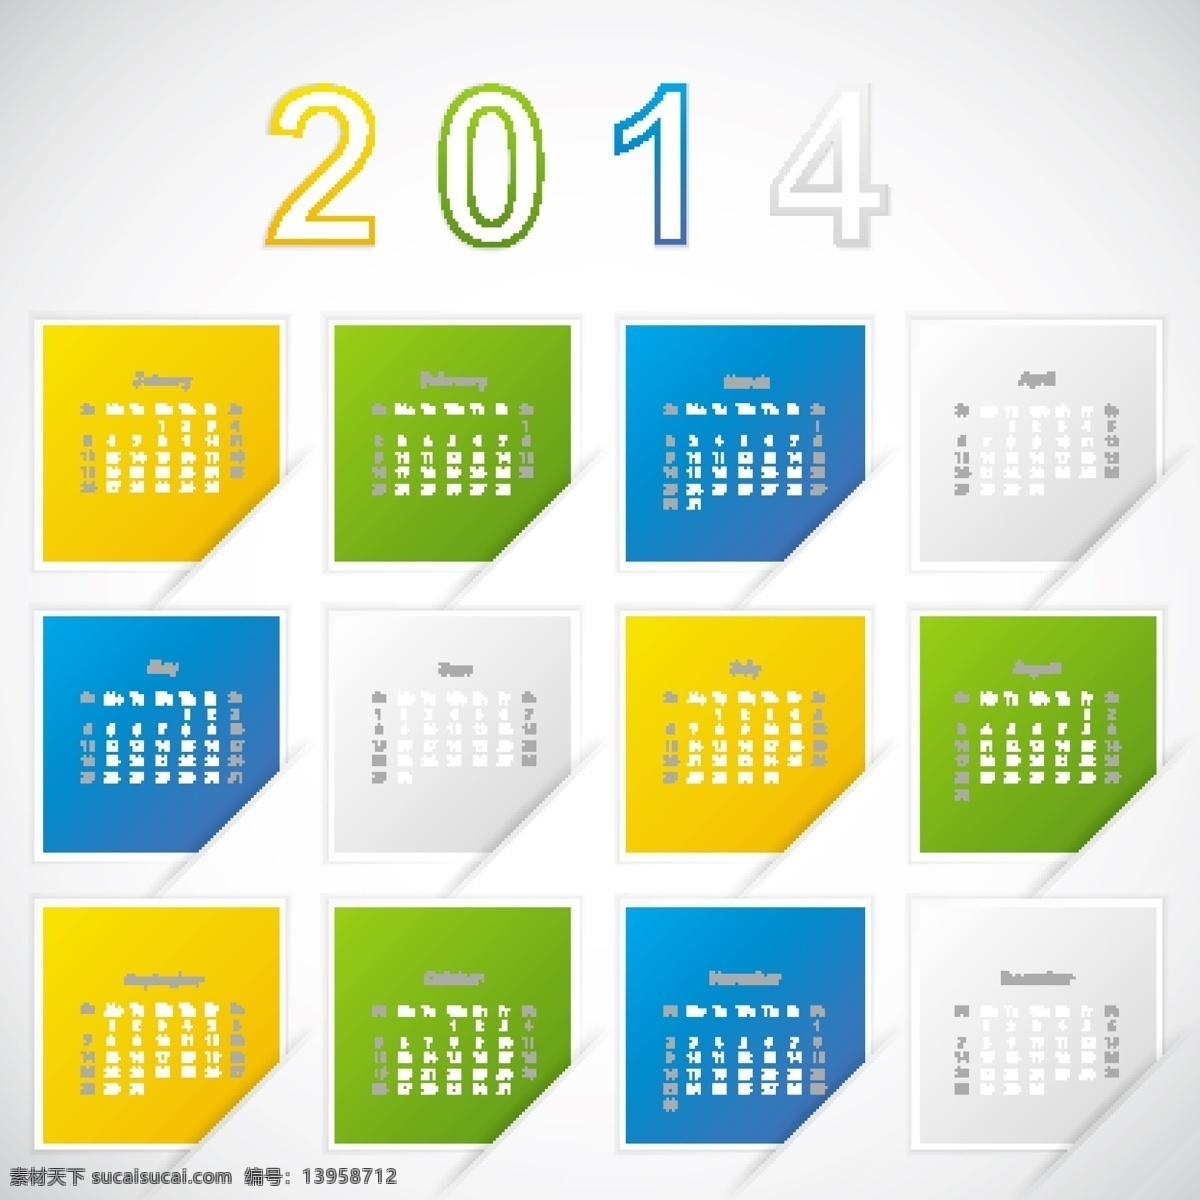 2014 年 日历 创意 日历素材 马年日历矢量 马年创意日历 矢量图 其他矢量图